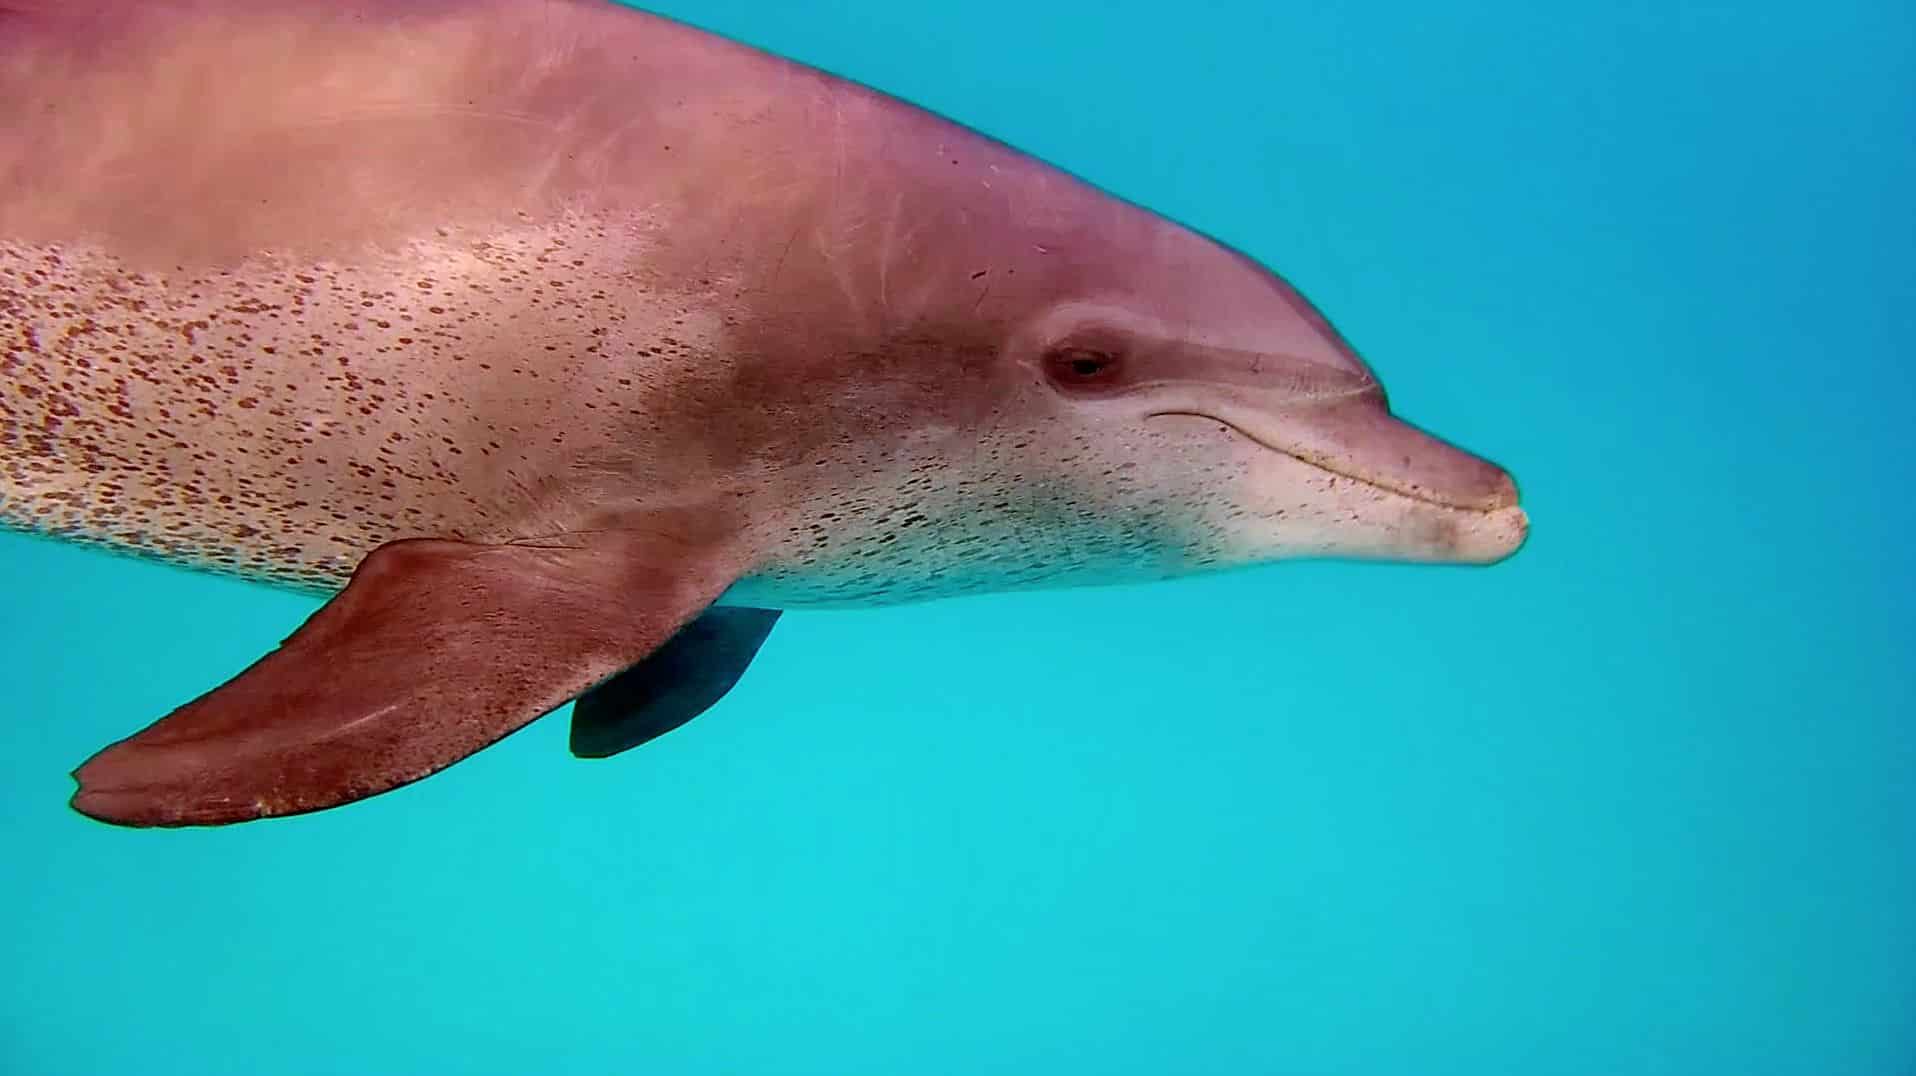 Nade con delfines libres: cara a cara con el delfín nariz de botella. Foto: Sascha Tegtmeyer